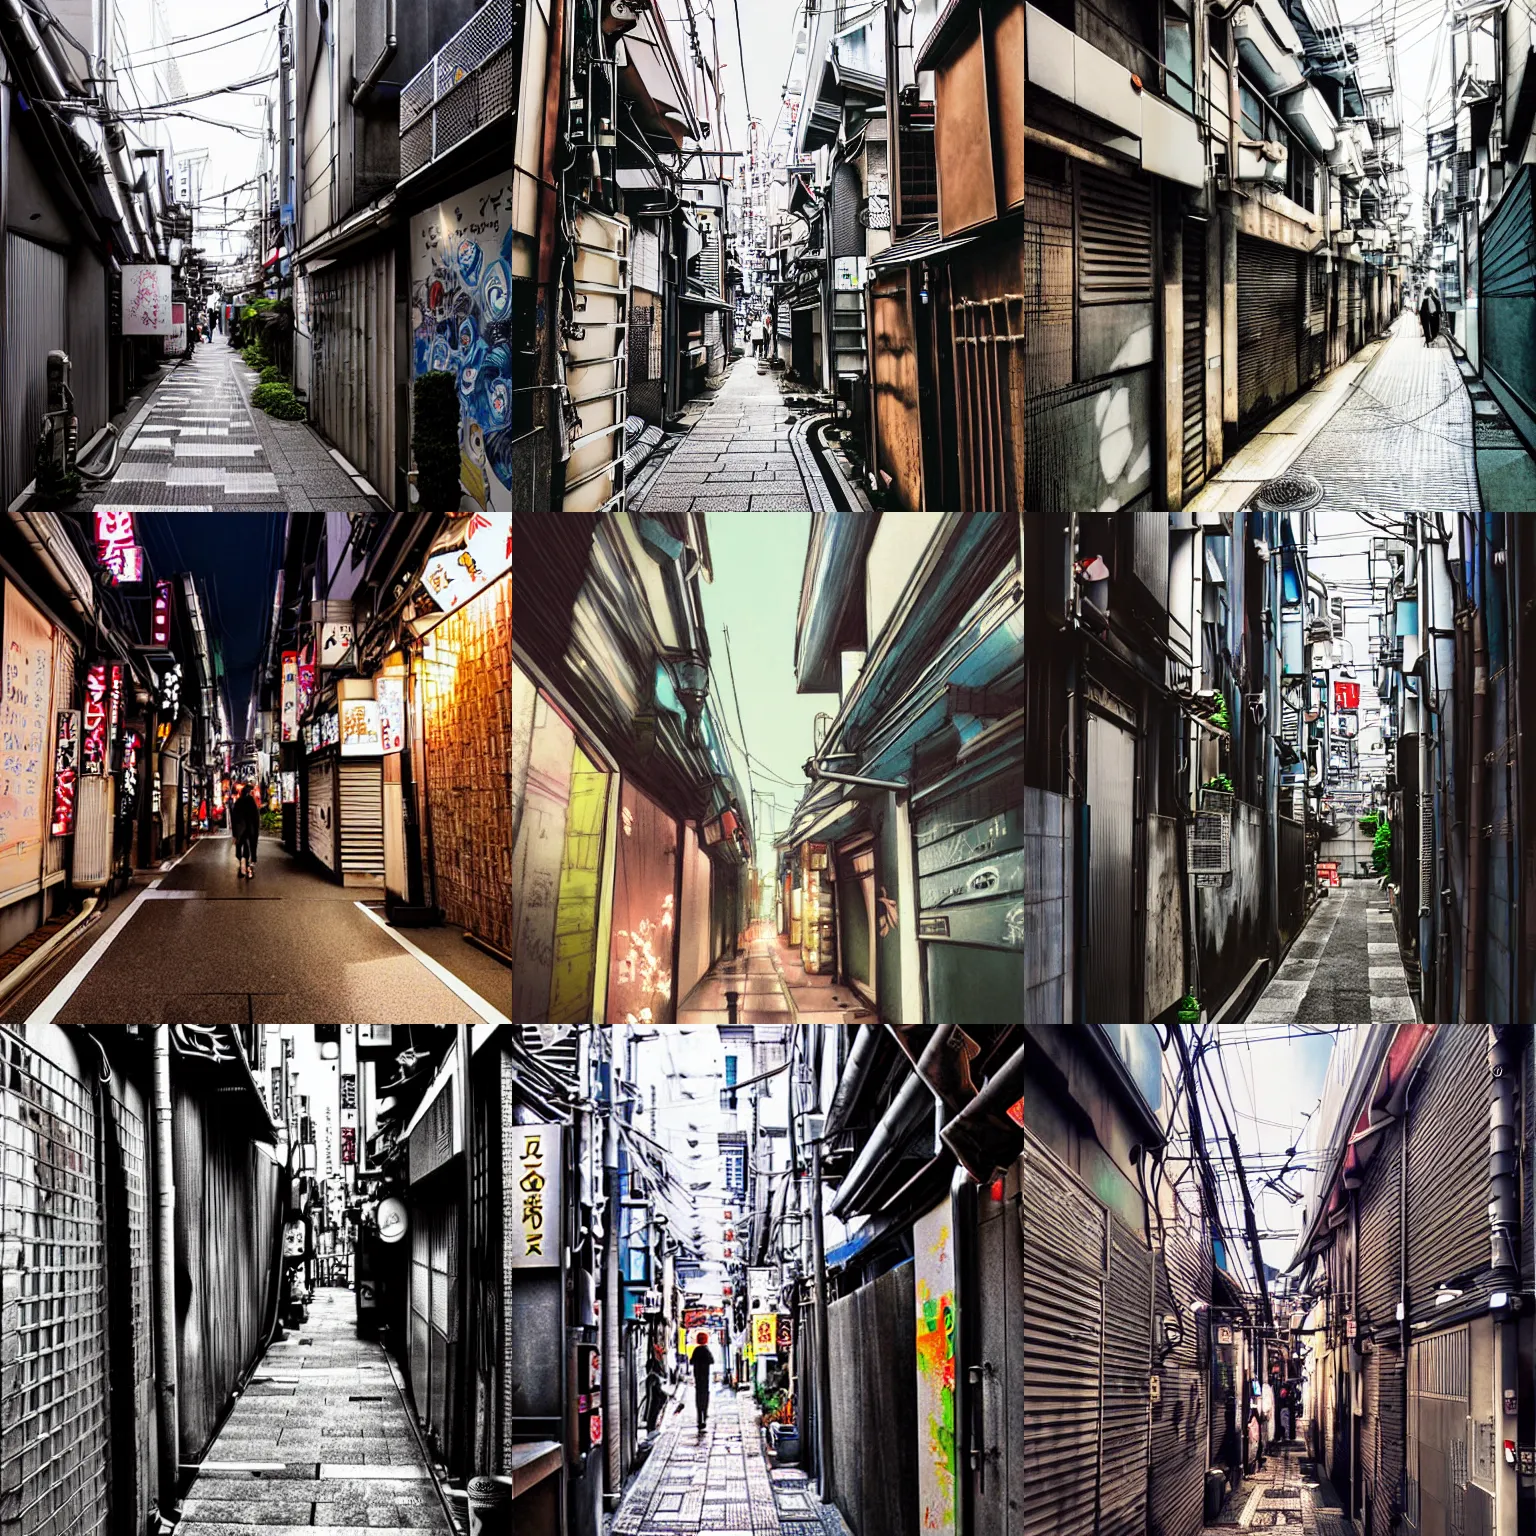 Prompt: tokyo alleyway by rossdraws, beautiful